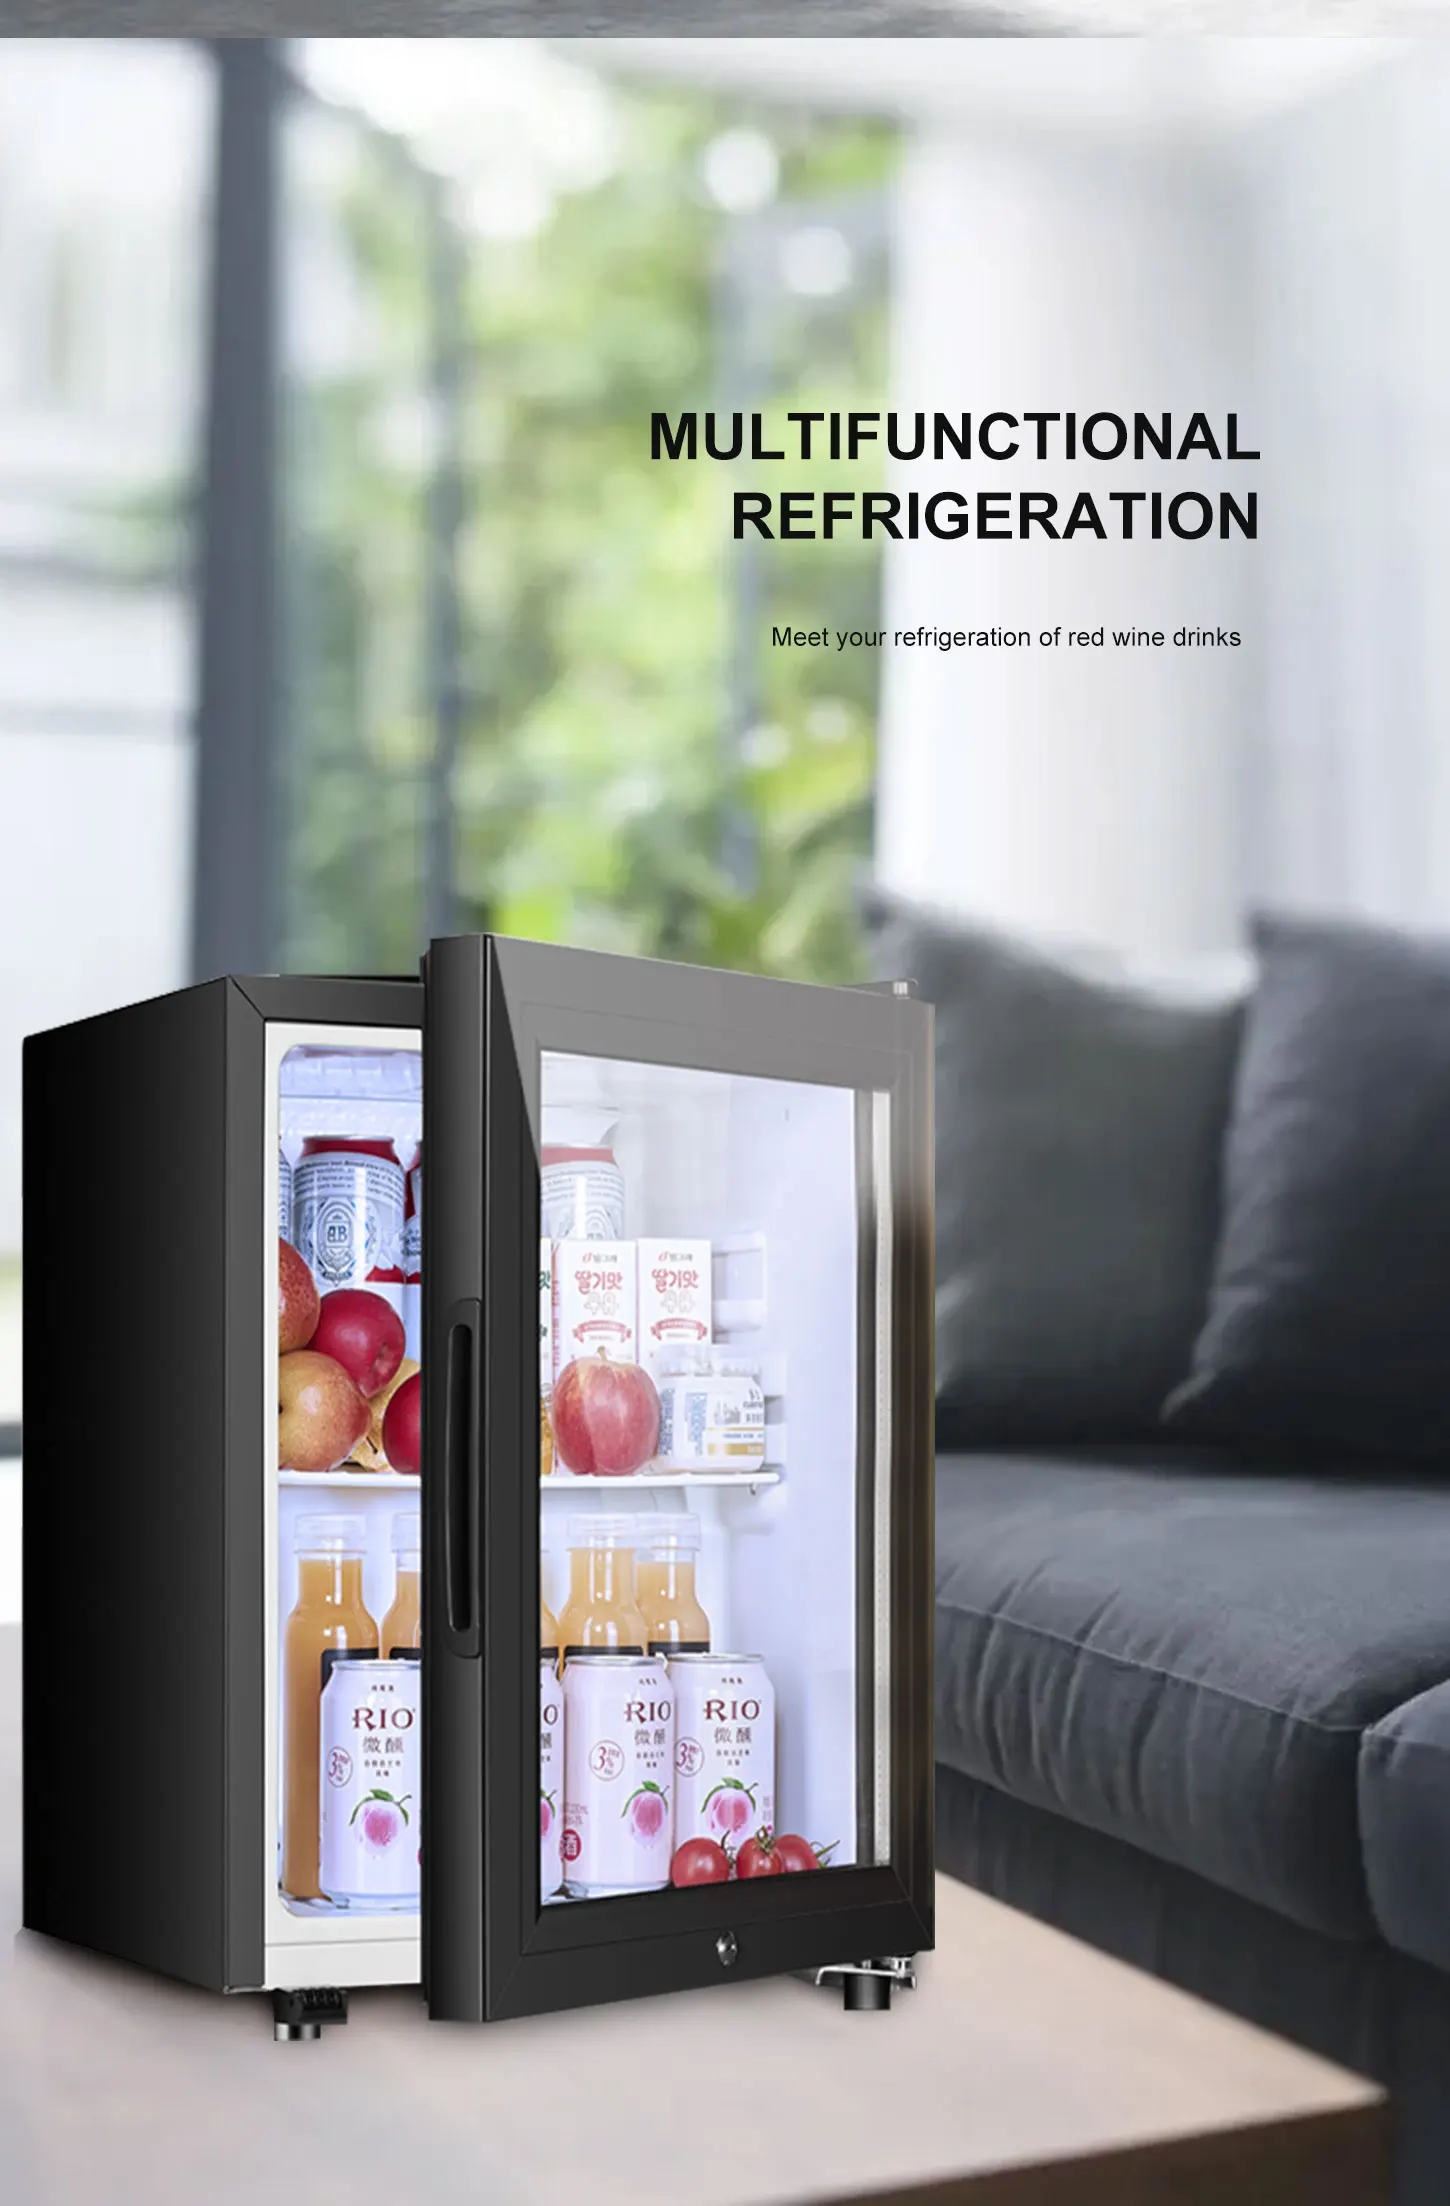 mini-Freezer 143 KW/année 121 L i55vm 1120 W INDESIT Table-réfrigérateur